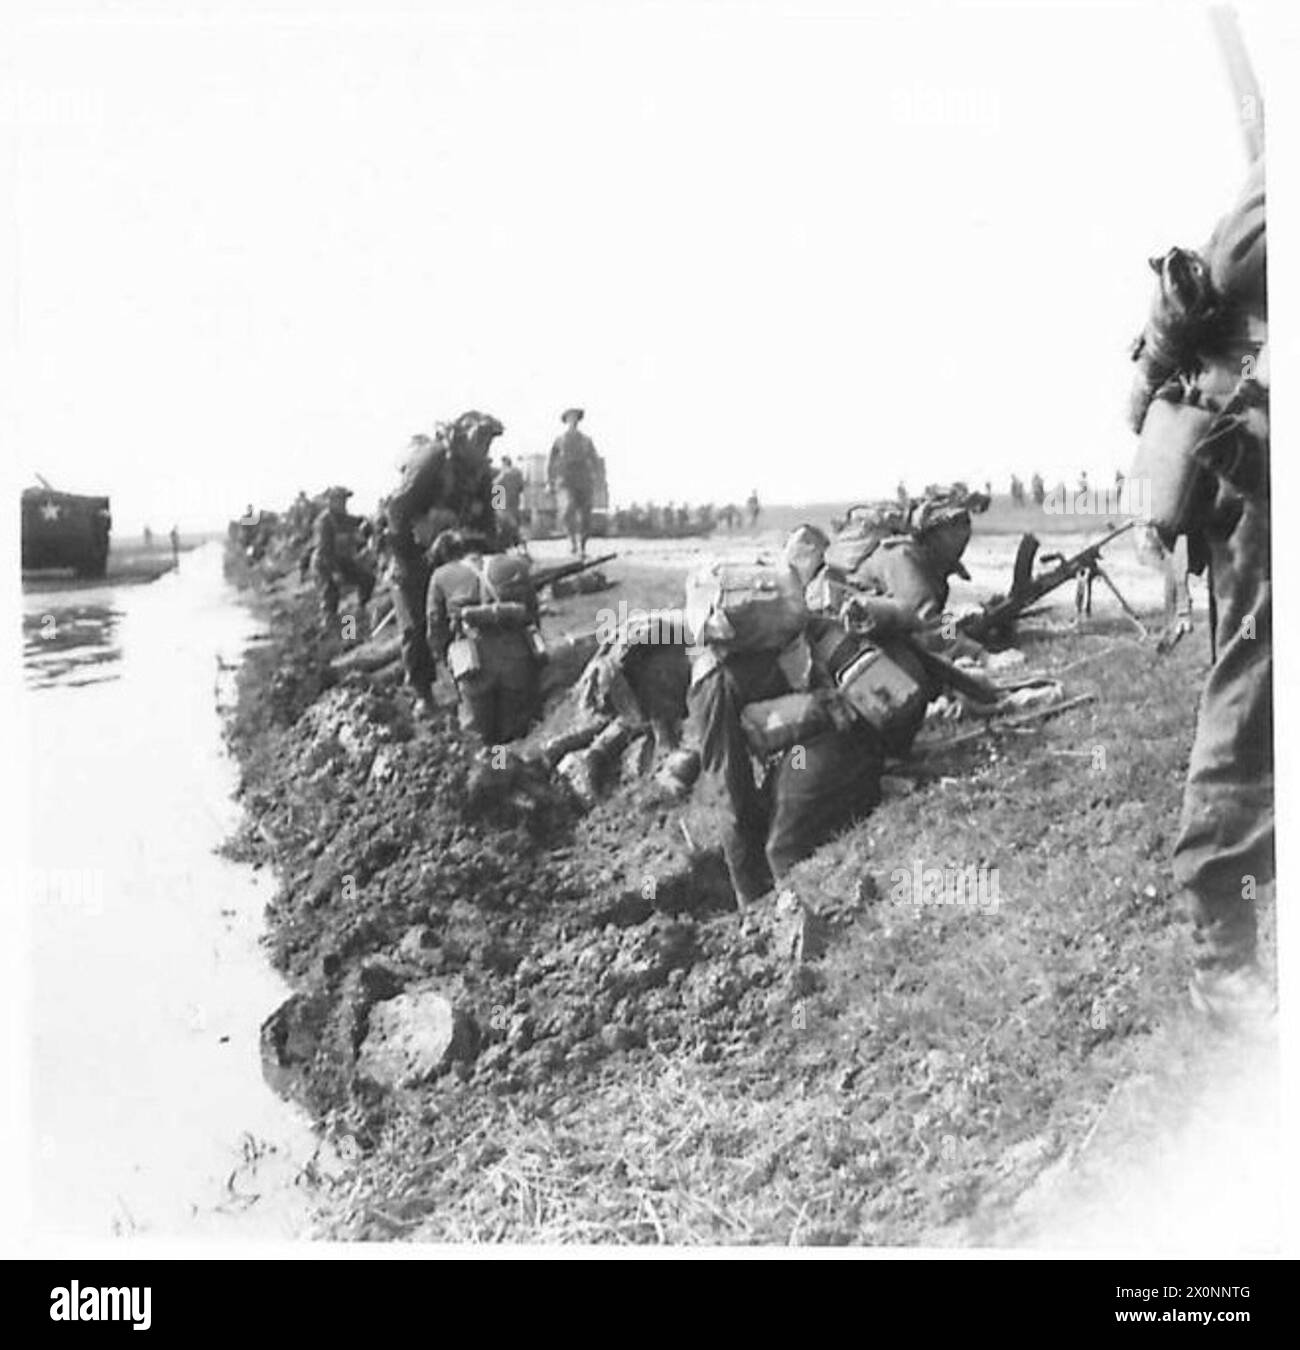 OTTAVO ESERCITO: FANTAILS IN AZIONE - la scena in spiaggia mentre le truppe si scavano nel terreno fangoso e soffice. Negativo fotografico, British Army Foto Stock